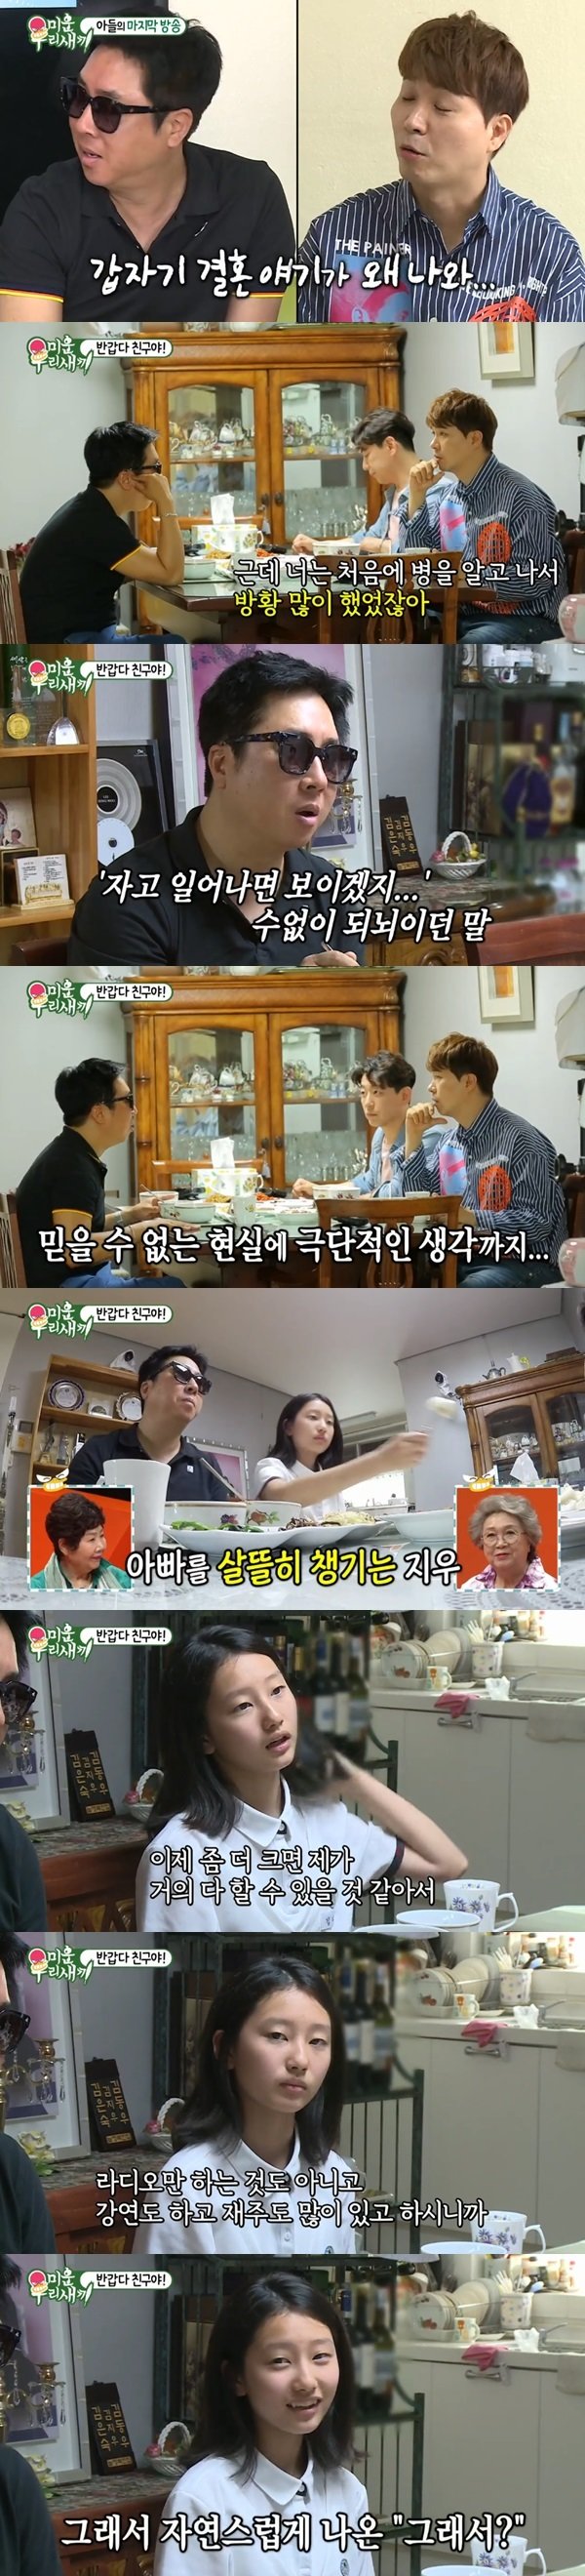 SBS ‘미운우리새끼’ 방송 화면 캡처© 뉴스1